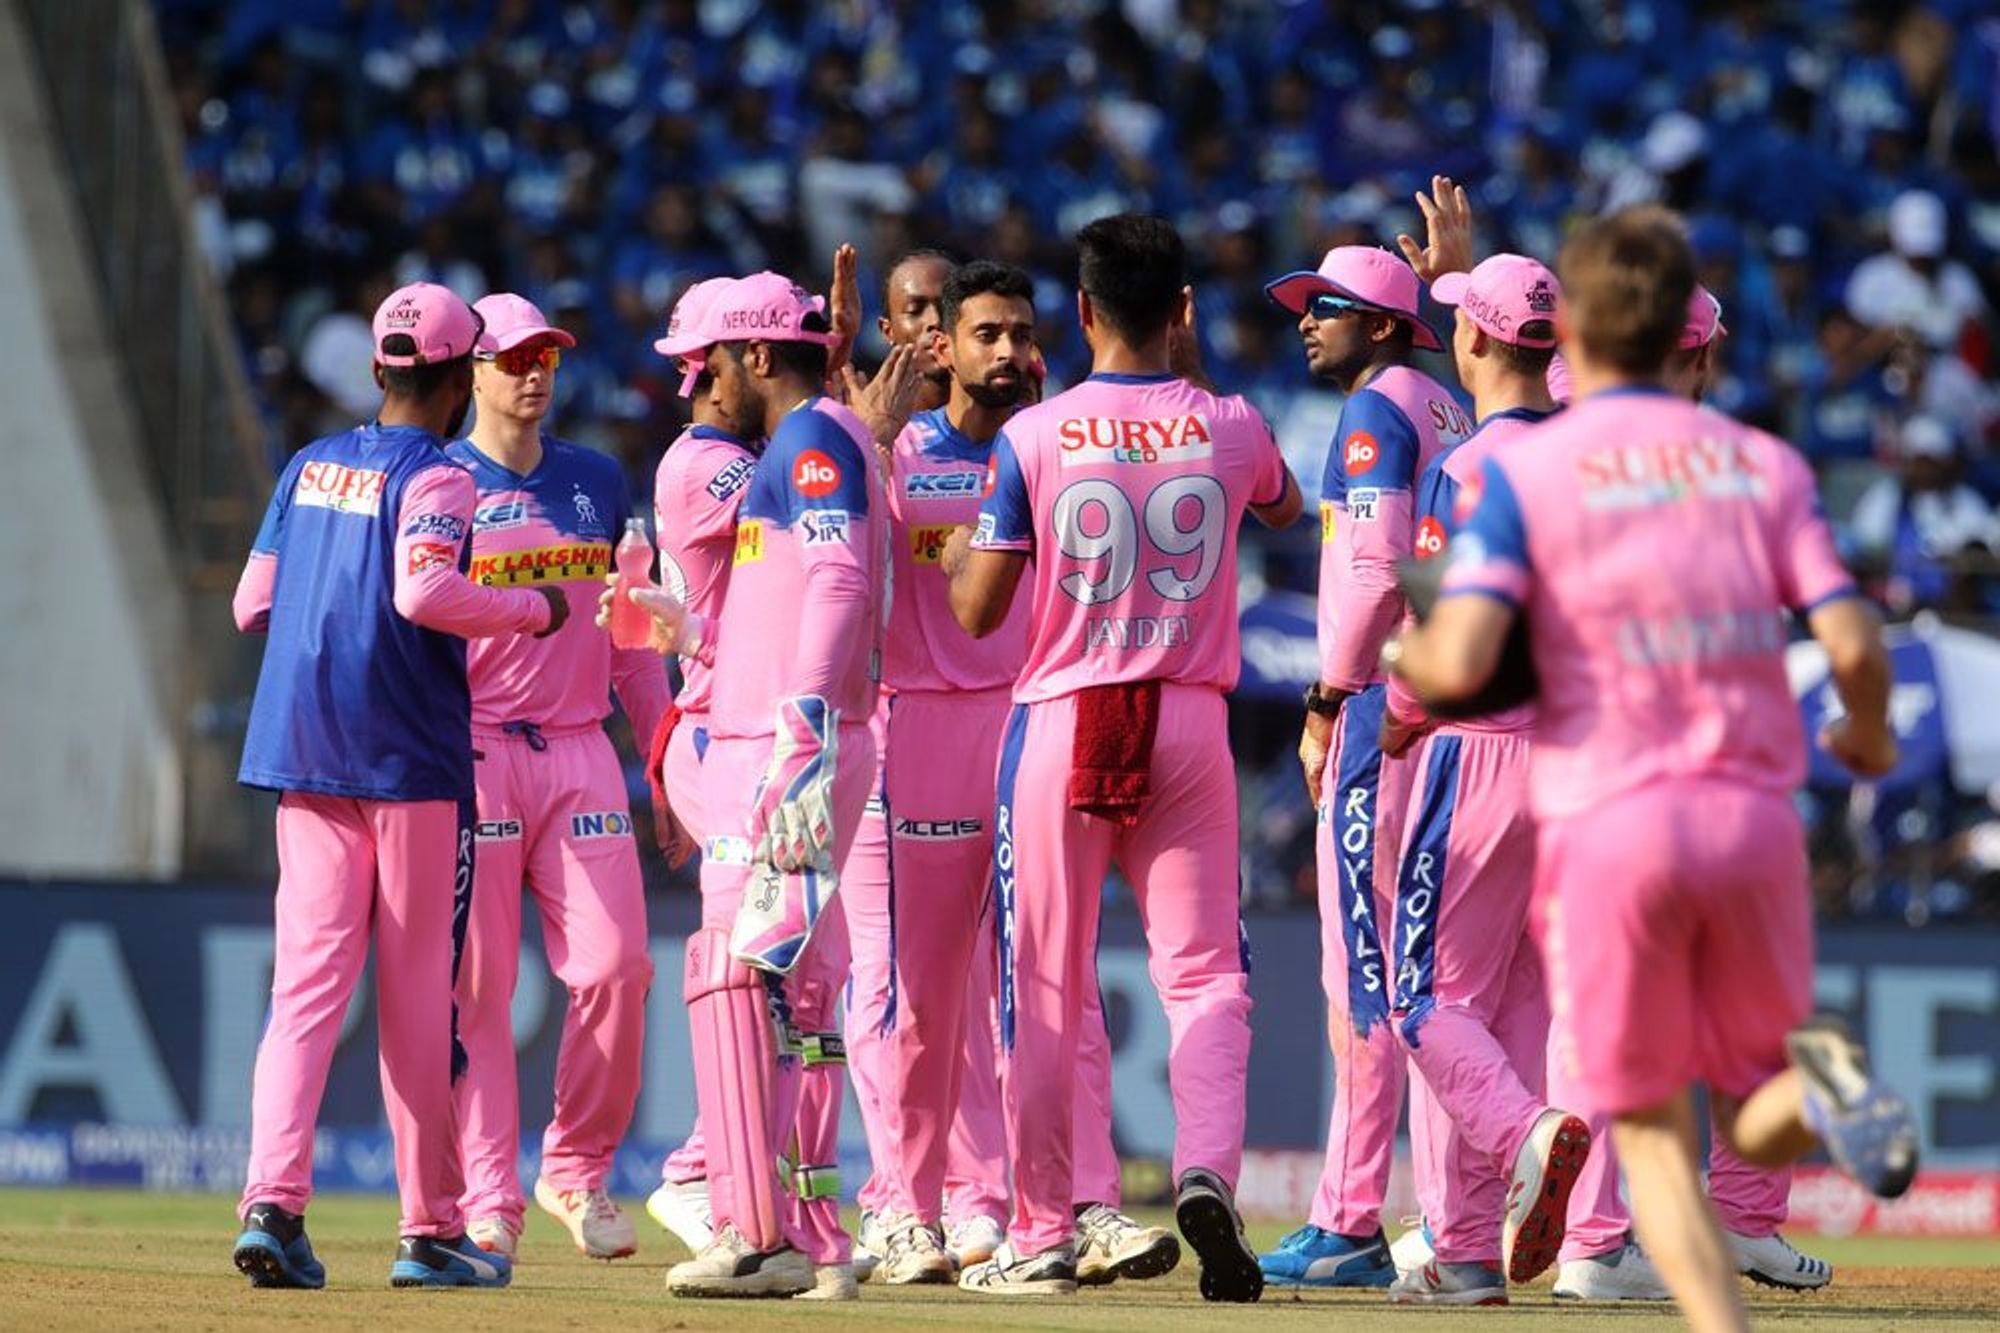 IPL 2019- जोस बटलर ने छोड़ा बीच आईपीएल में राजस्थान रॉयल्स का साथ लौटे स्वदेश, ये रही वजह 1